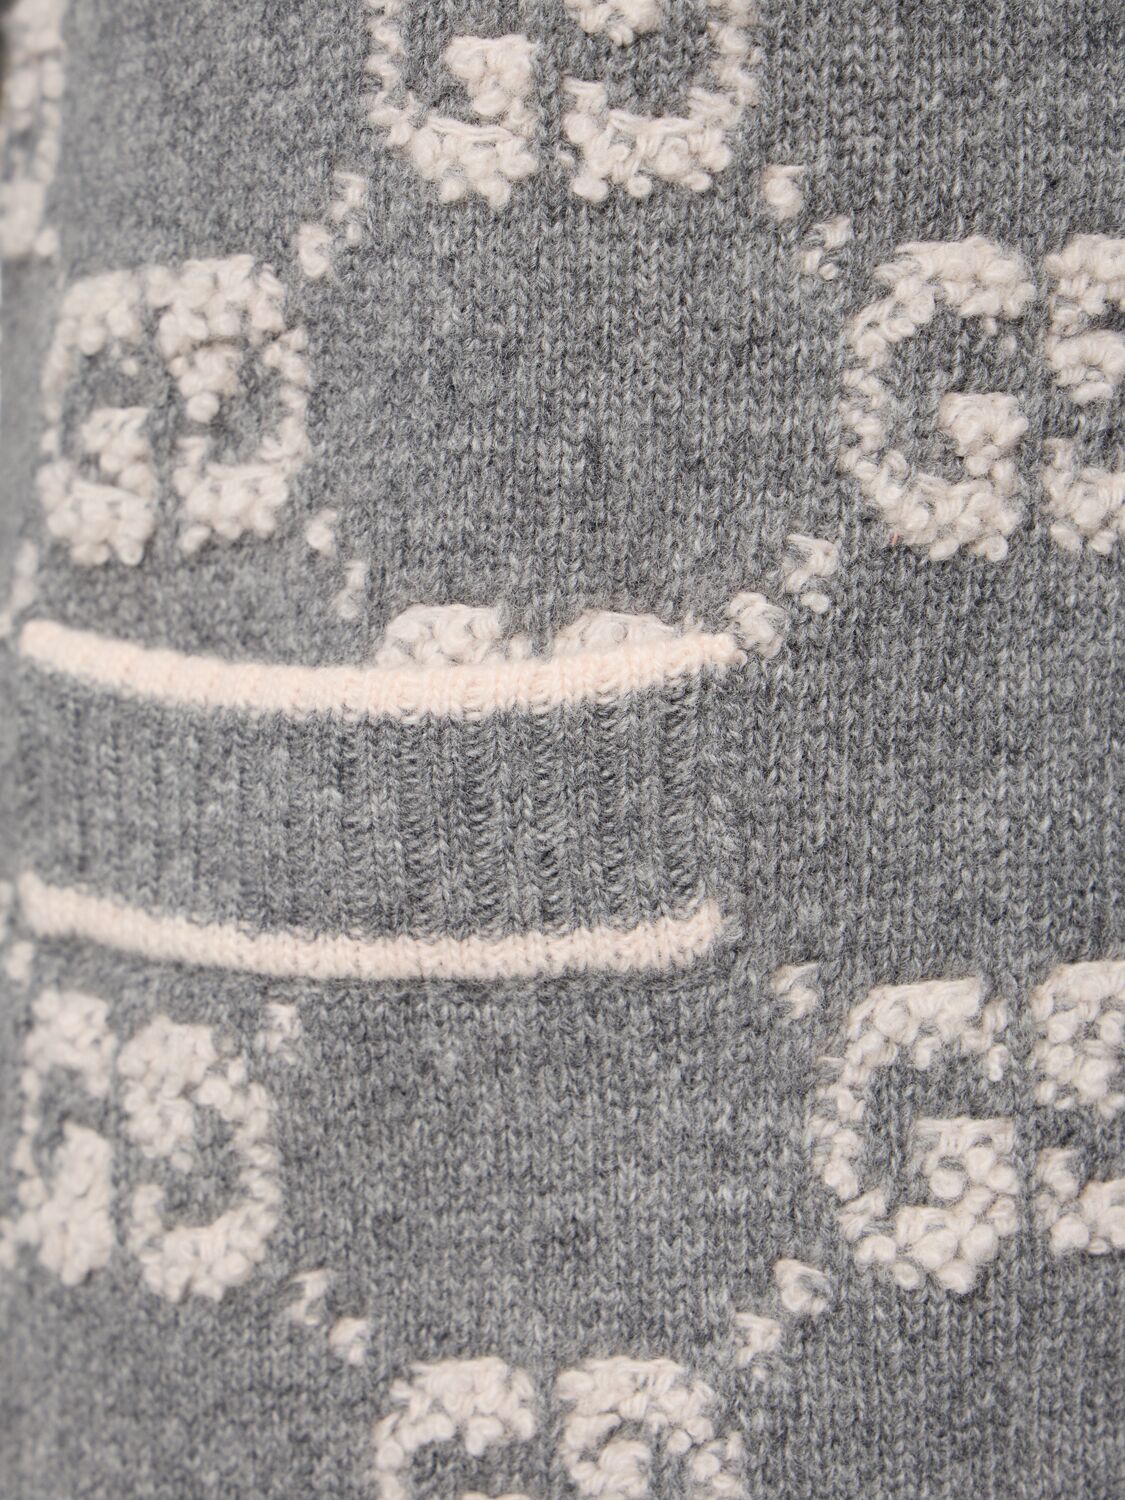 Shop Gucci Gg Wool Cardigan In Grey